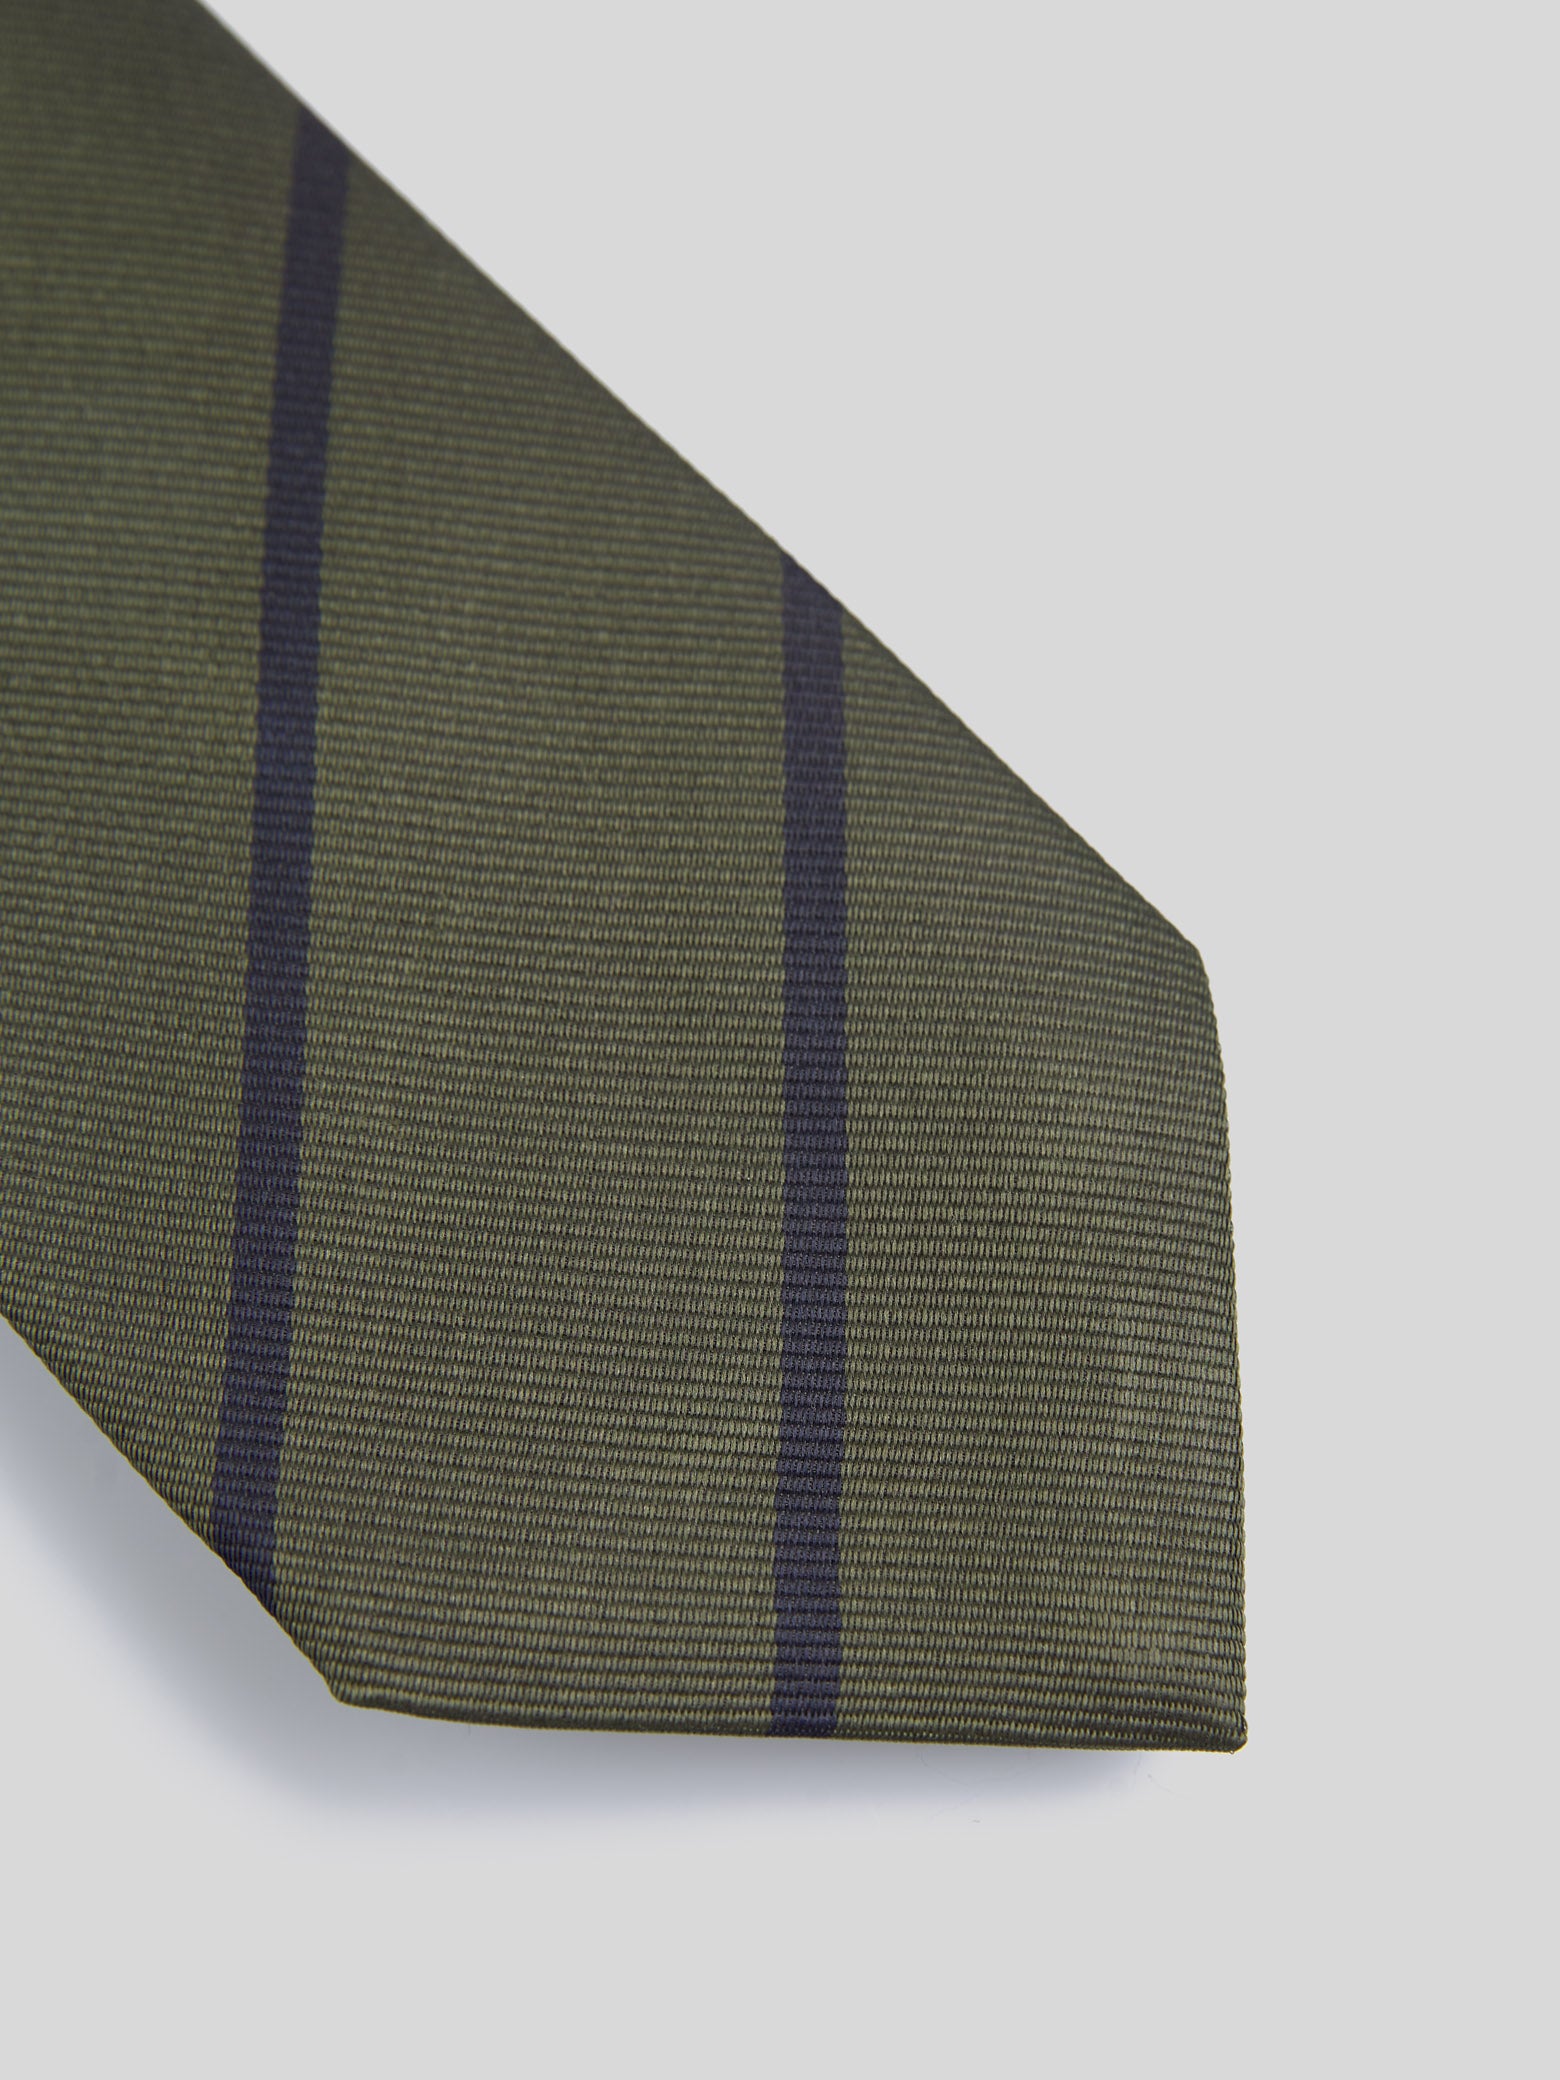 Corbata vintage silbon mini rayas verde